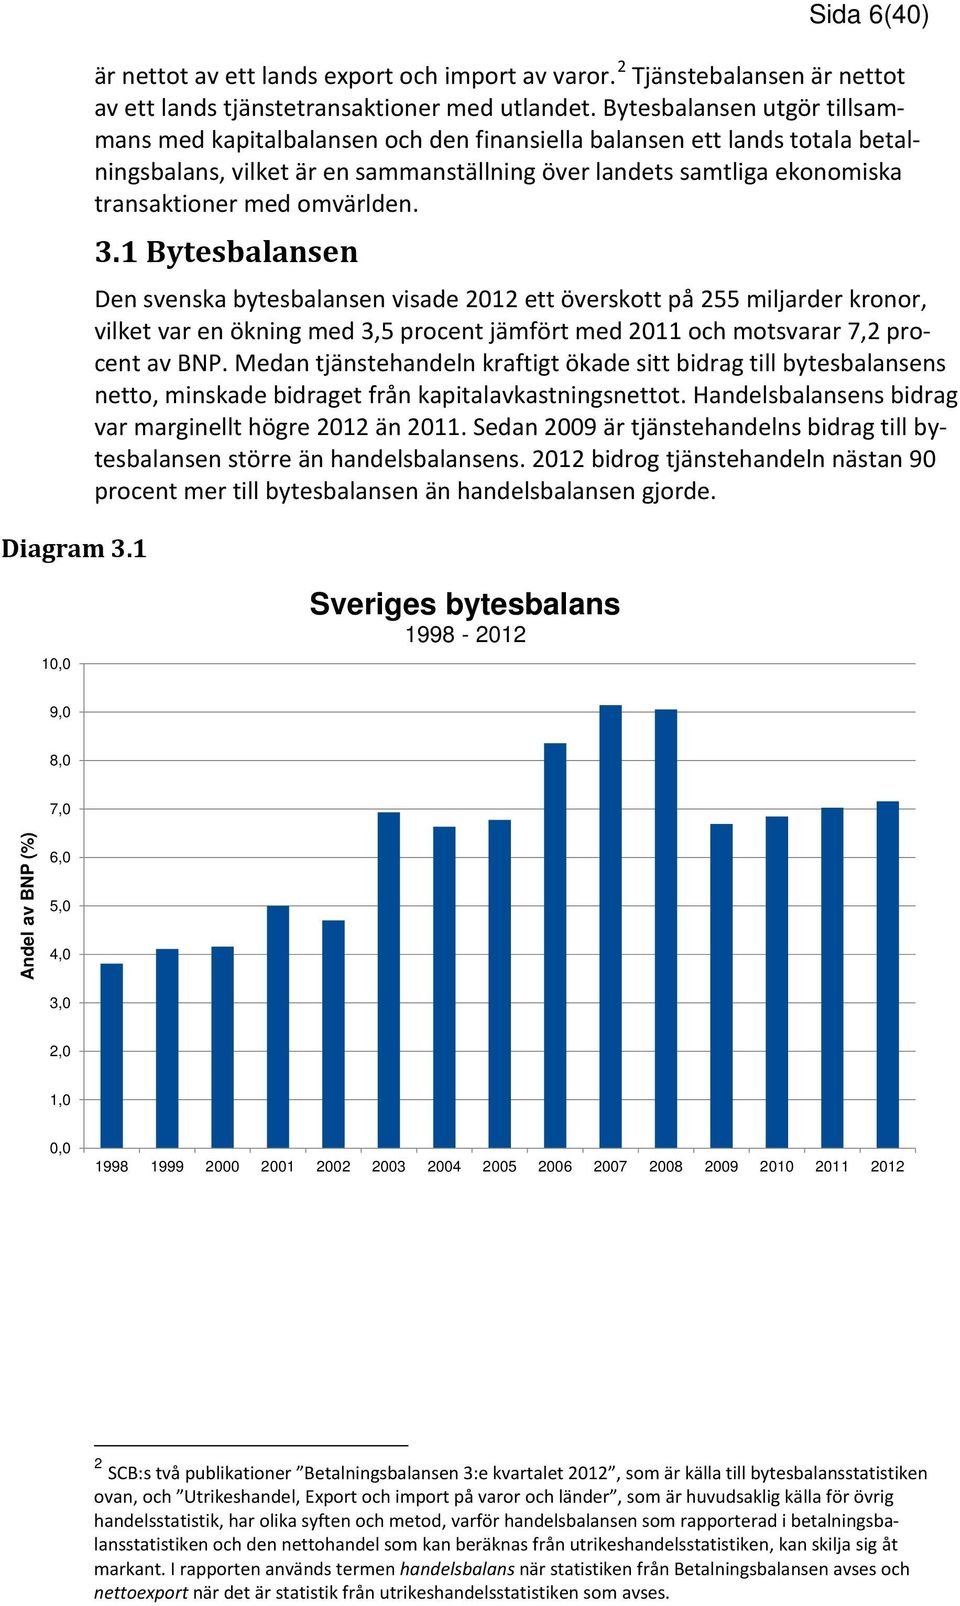 omvärlden. 3.1 Bytesbalansen Den svenska bytesbalansen visade 2012 ett överskott på 255 miljarder kronor, vilket var en ökning med 3,5 procent jämfört med 2011 och motsvarar 7,2 procent av BNP.